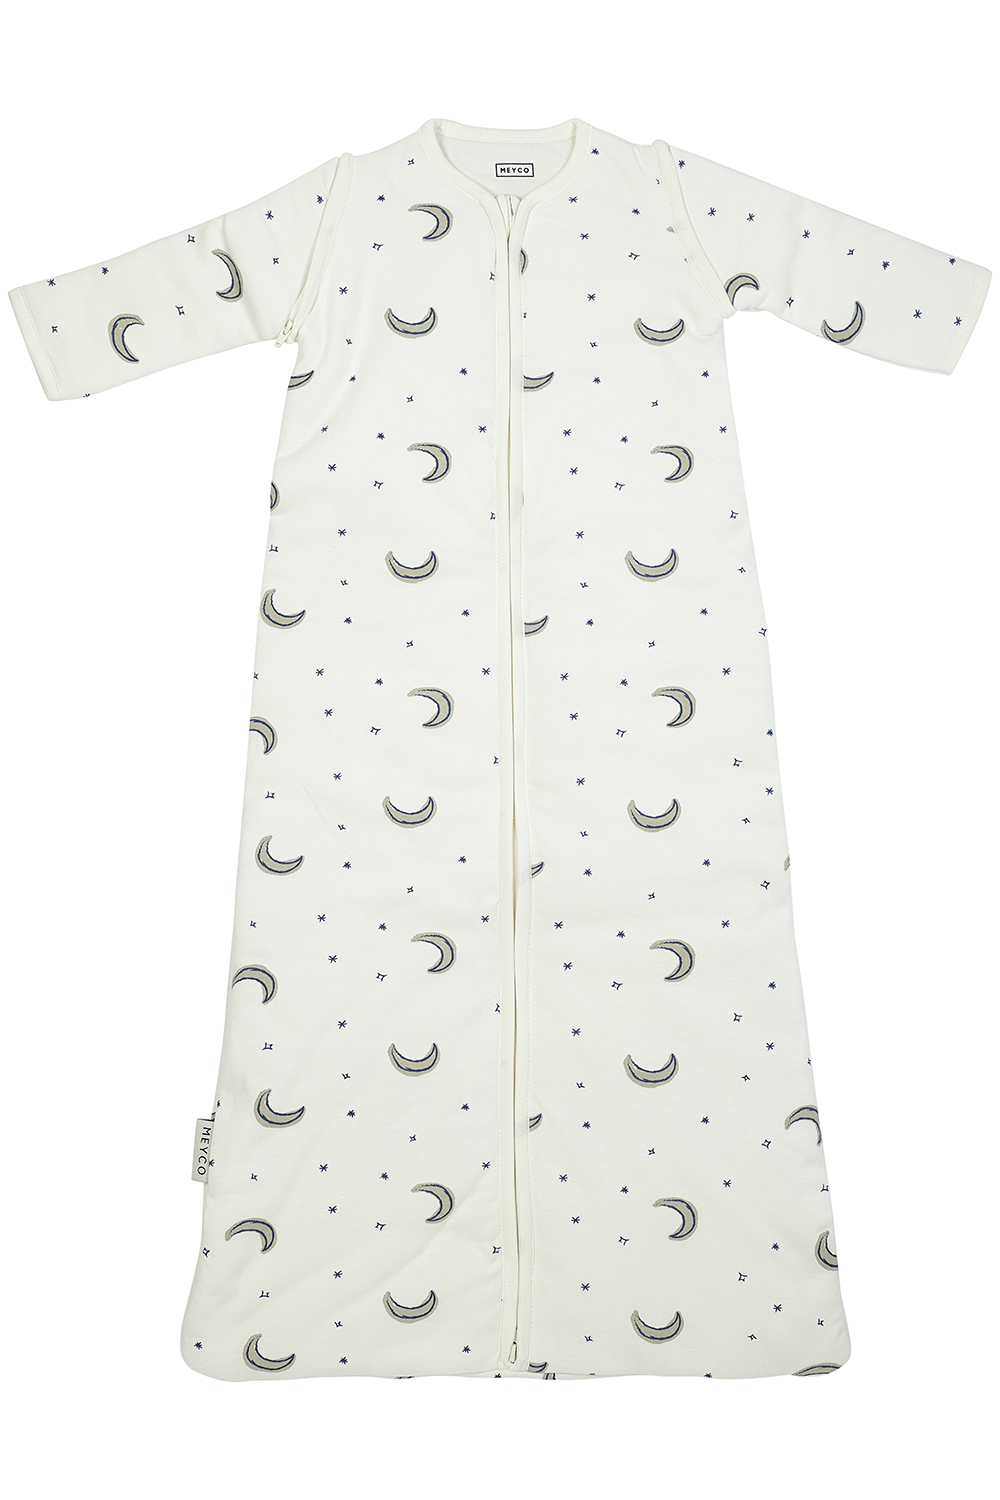 Babyschlafsack mit abnehmbaren Ärmeln Moon - indigo - 90cm